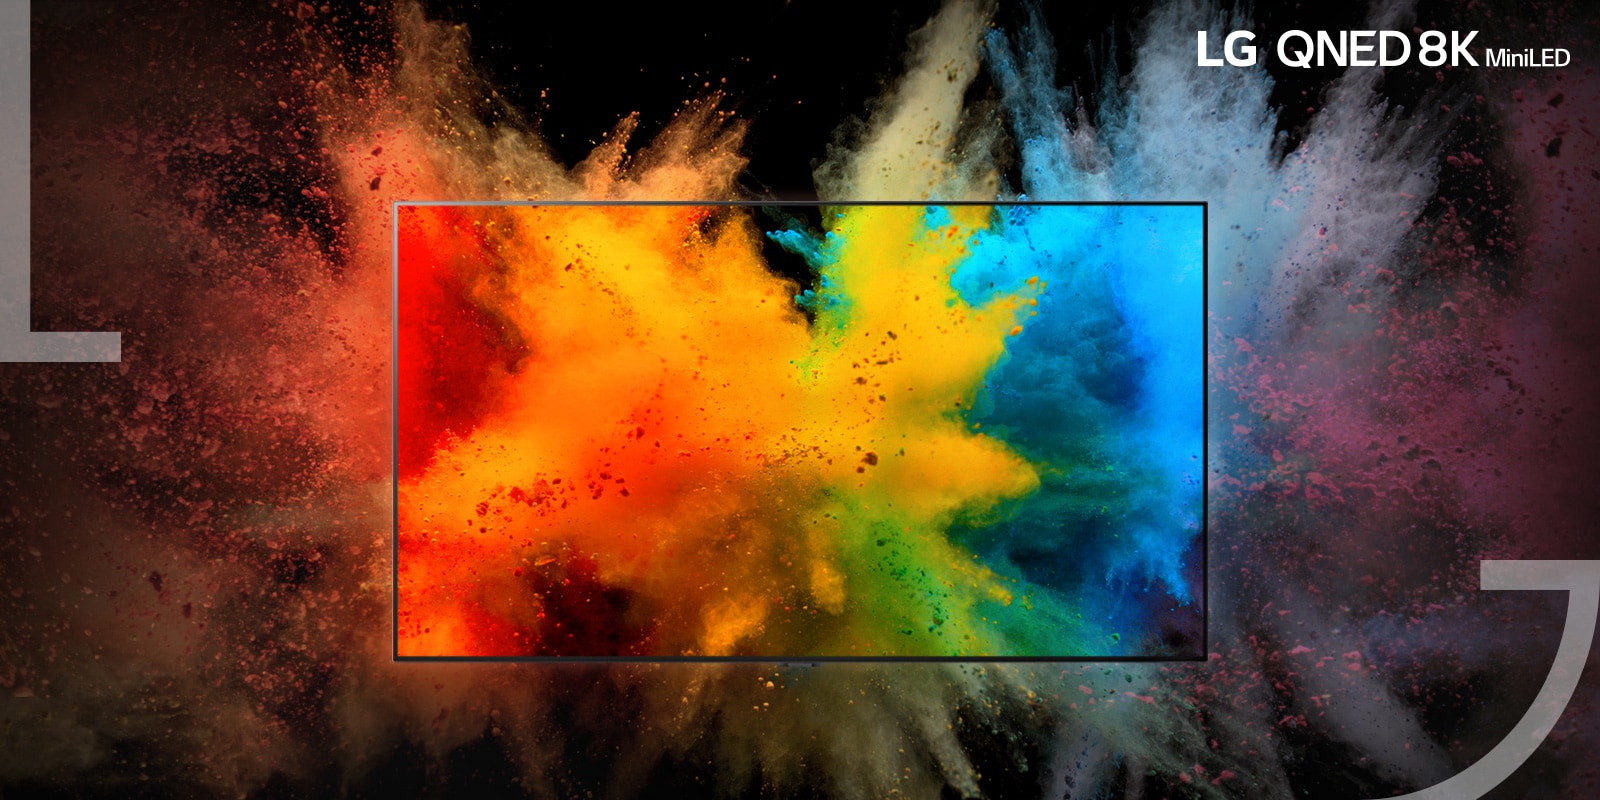 Televizor se nalazi u sredini – prah u boji rasprskava se na TV monitoru, a prah u boji takođe iskače iz okvira televizora.